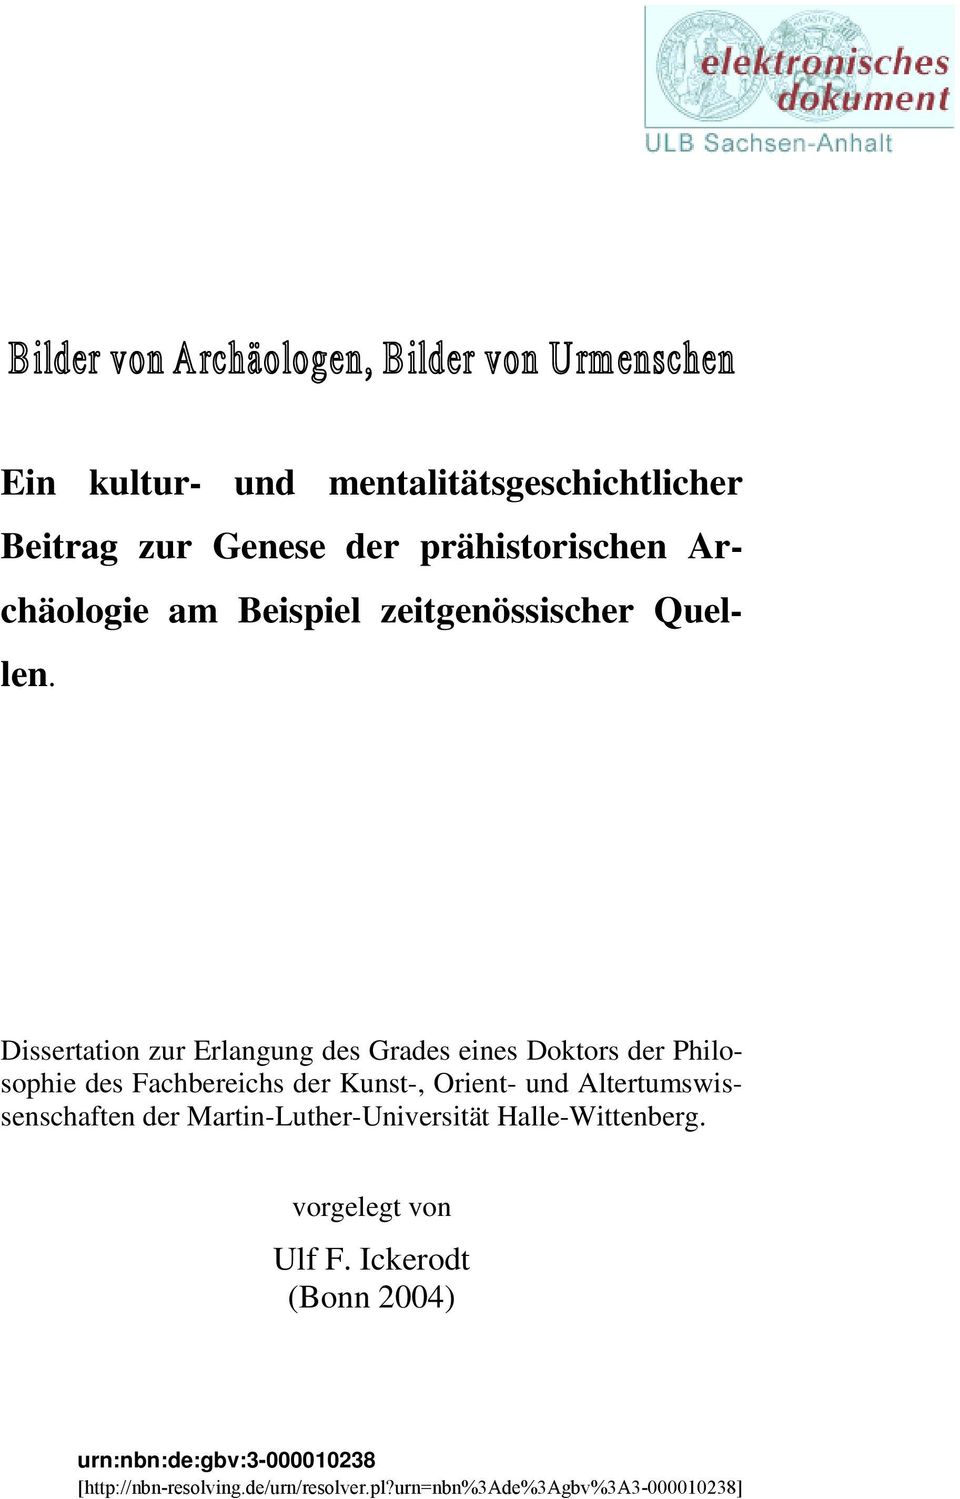 Dissertation zur Erlangung des Grades eines Doktors der Philosophie des Fachbereichs der Kunst-, Orient- und